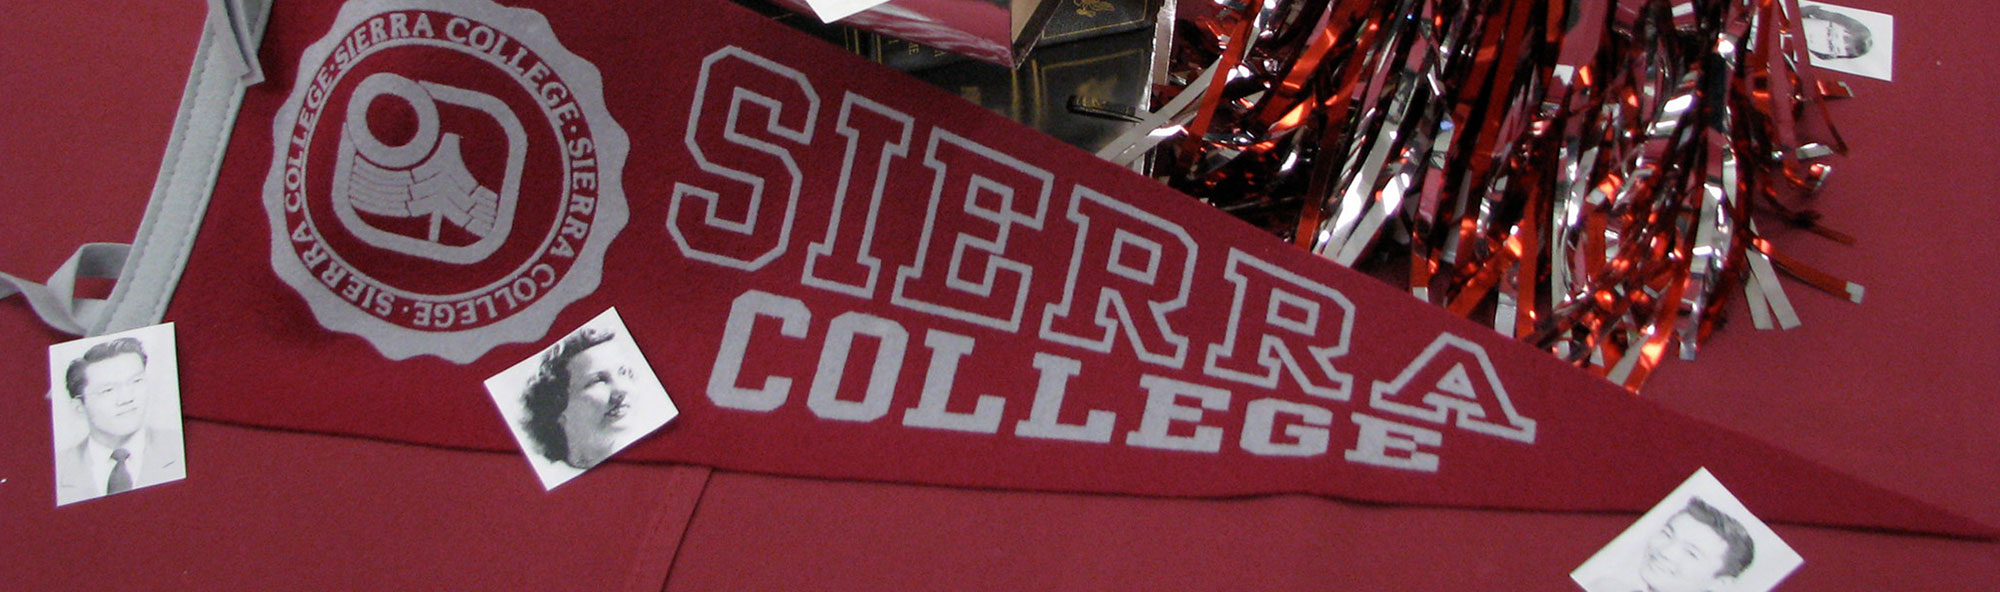 Support Sierra College Alumni Association